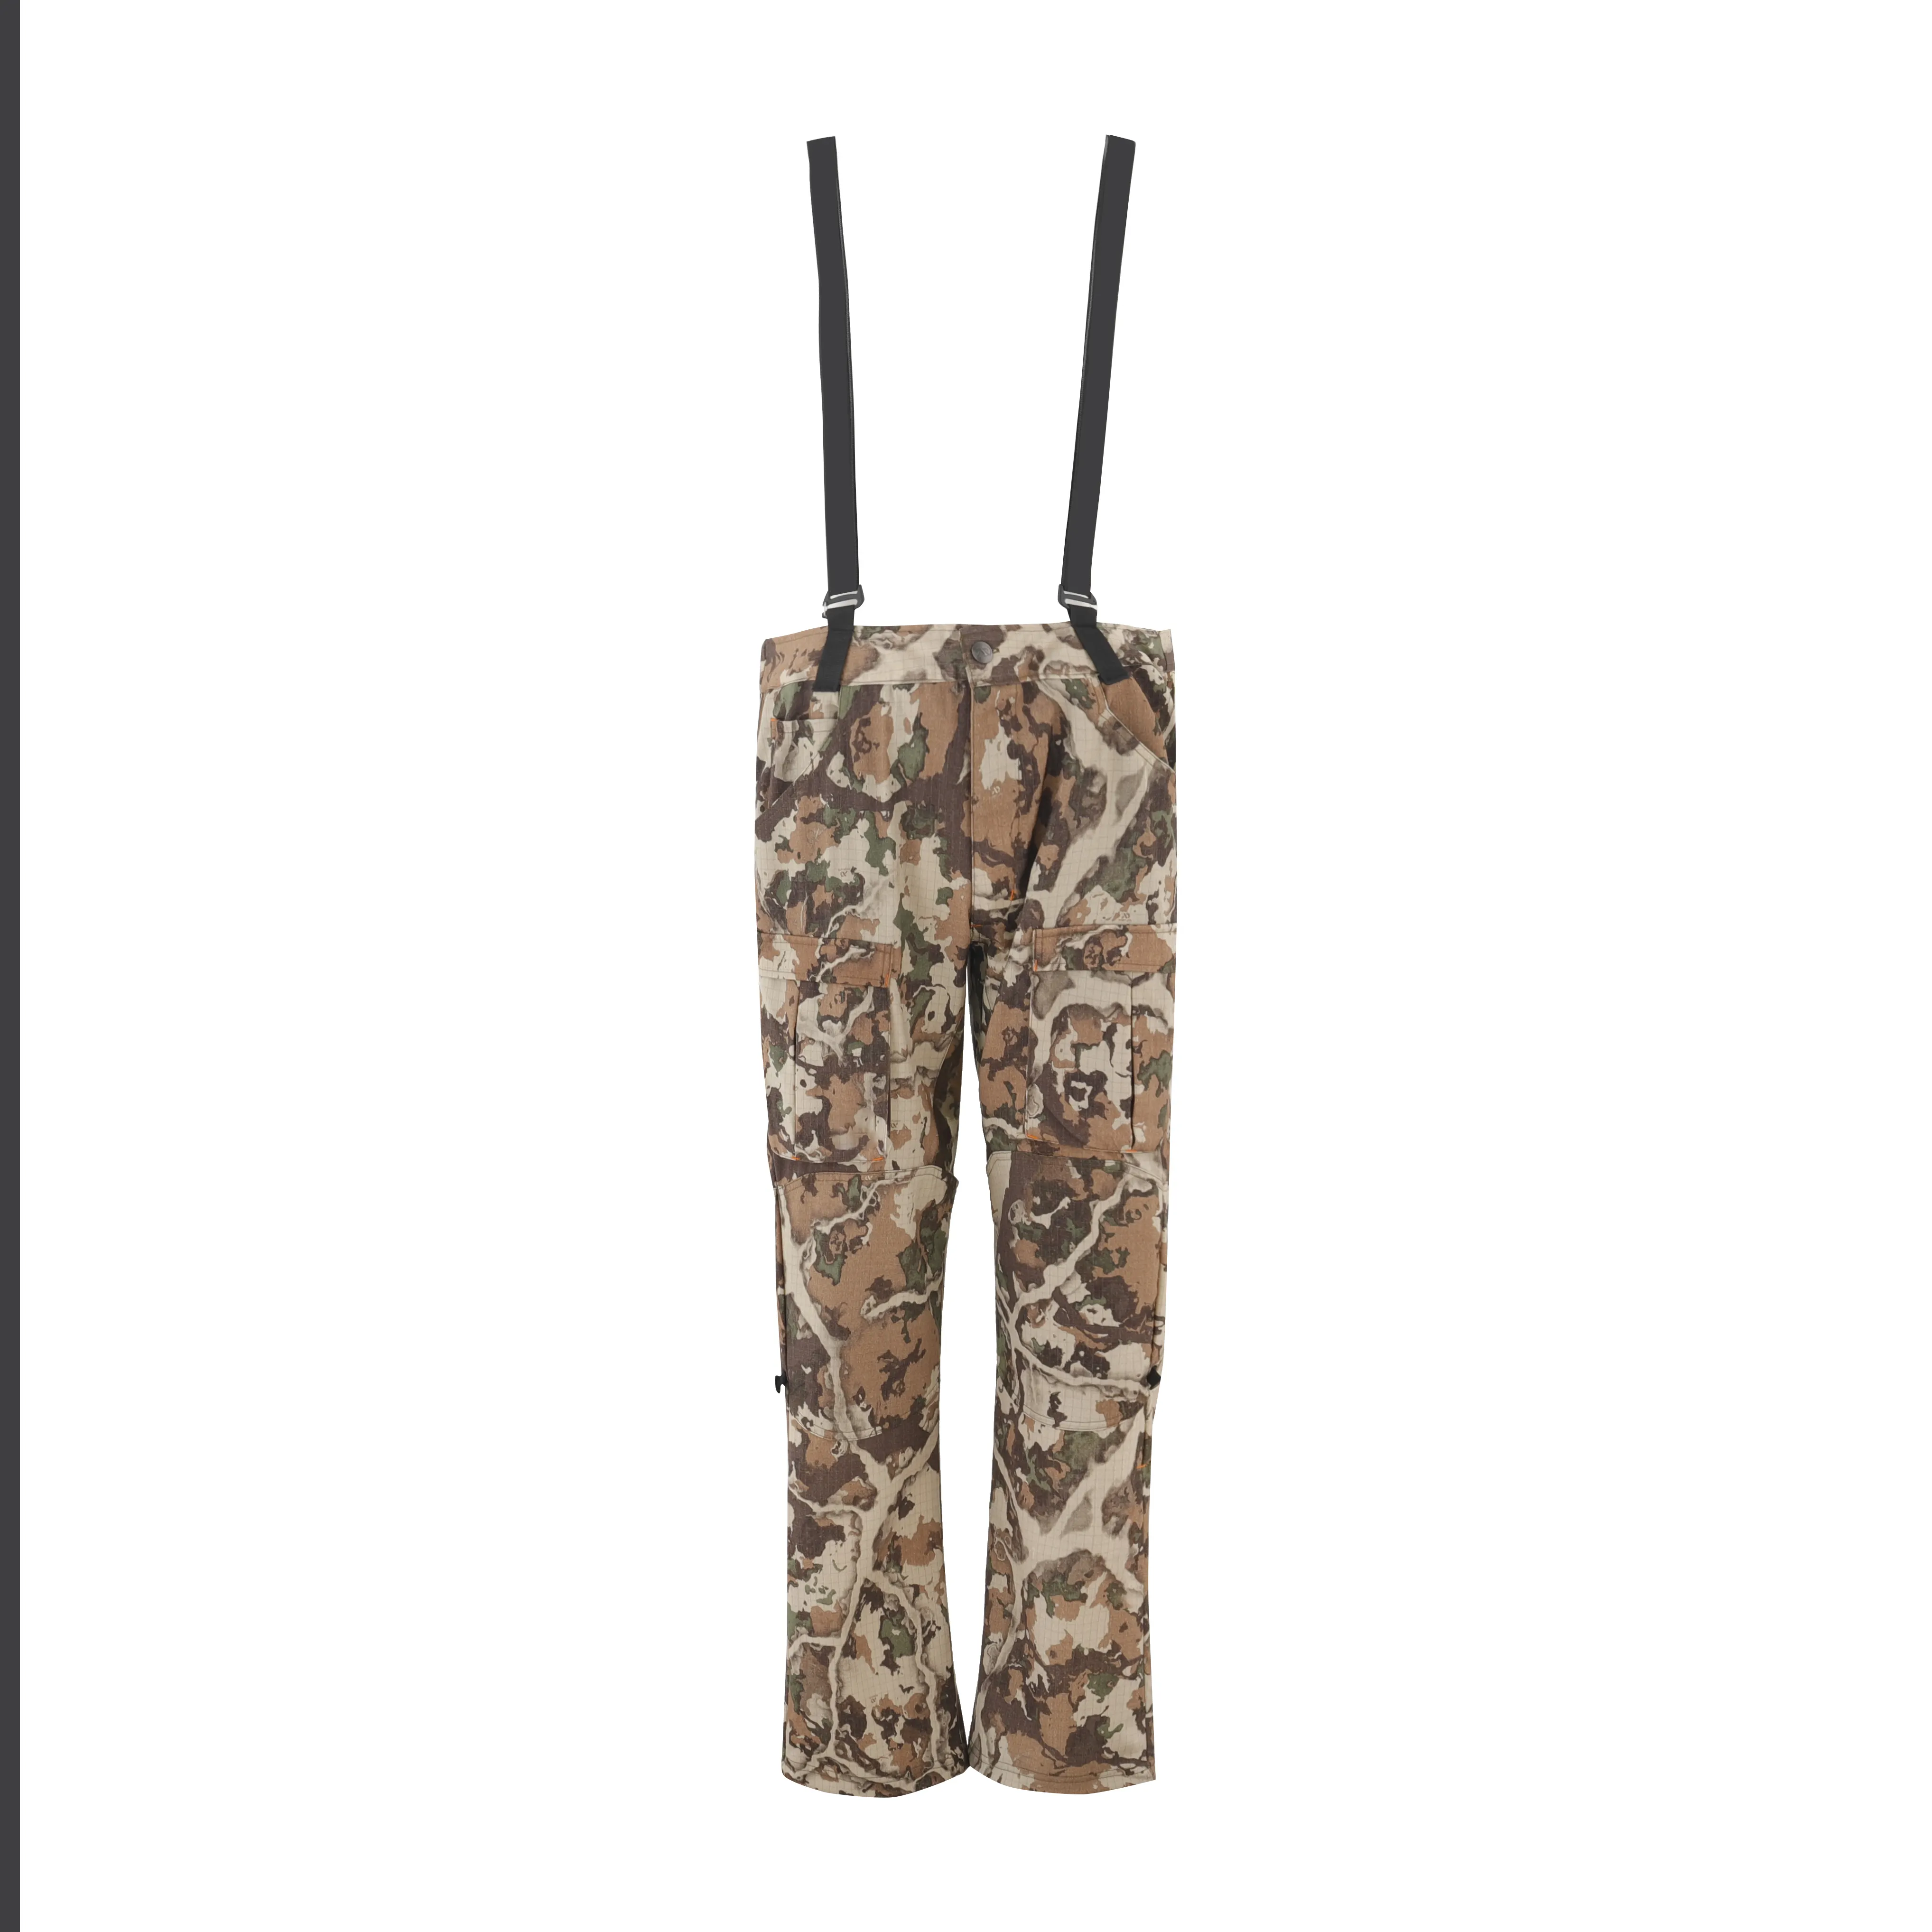 Vente en gros de bavoirs de pêche pantalon de chasse camouflage pour hommes